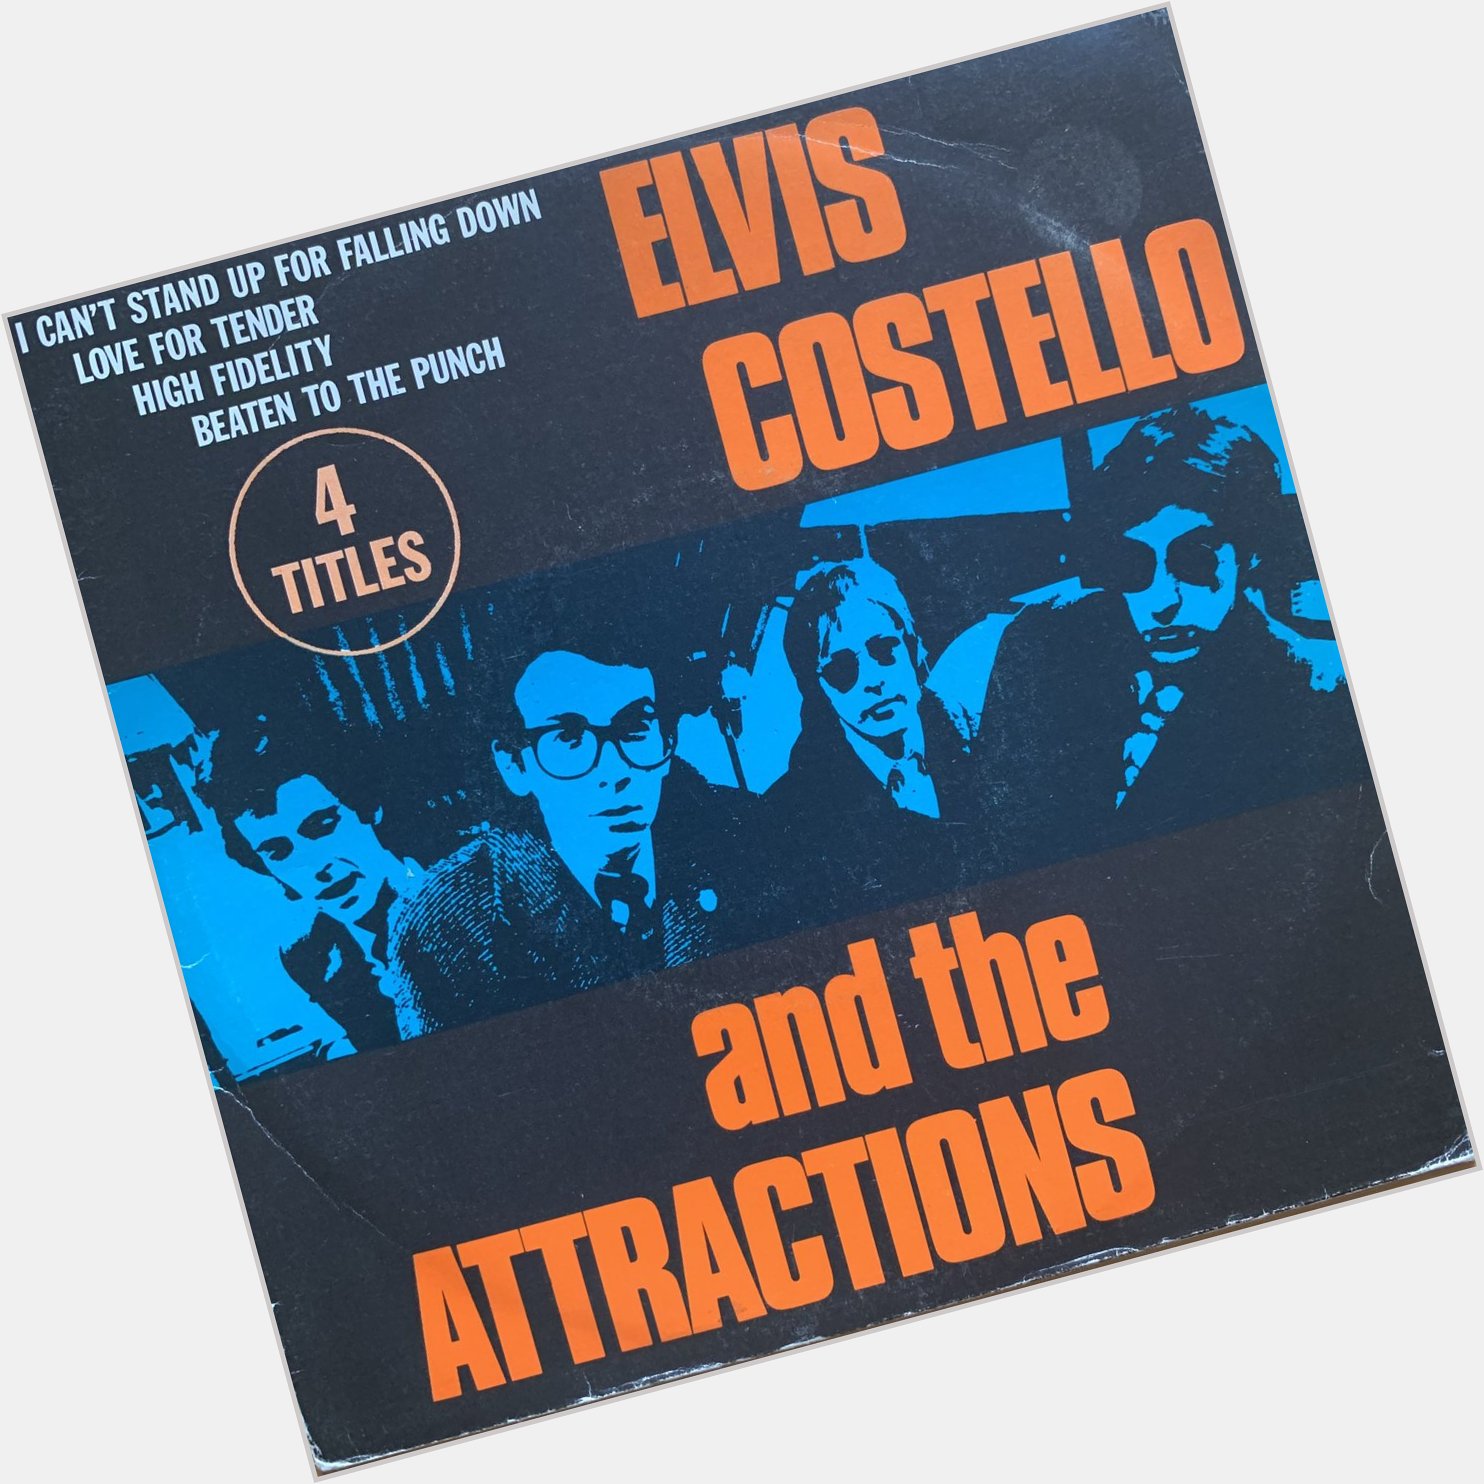 Happy Birthday!
Elvis Costello 